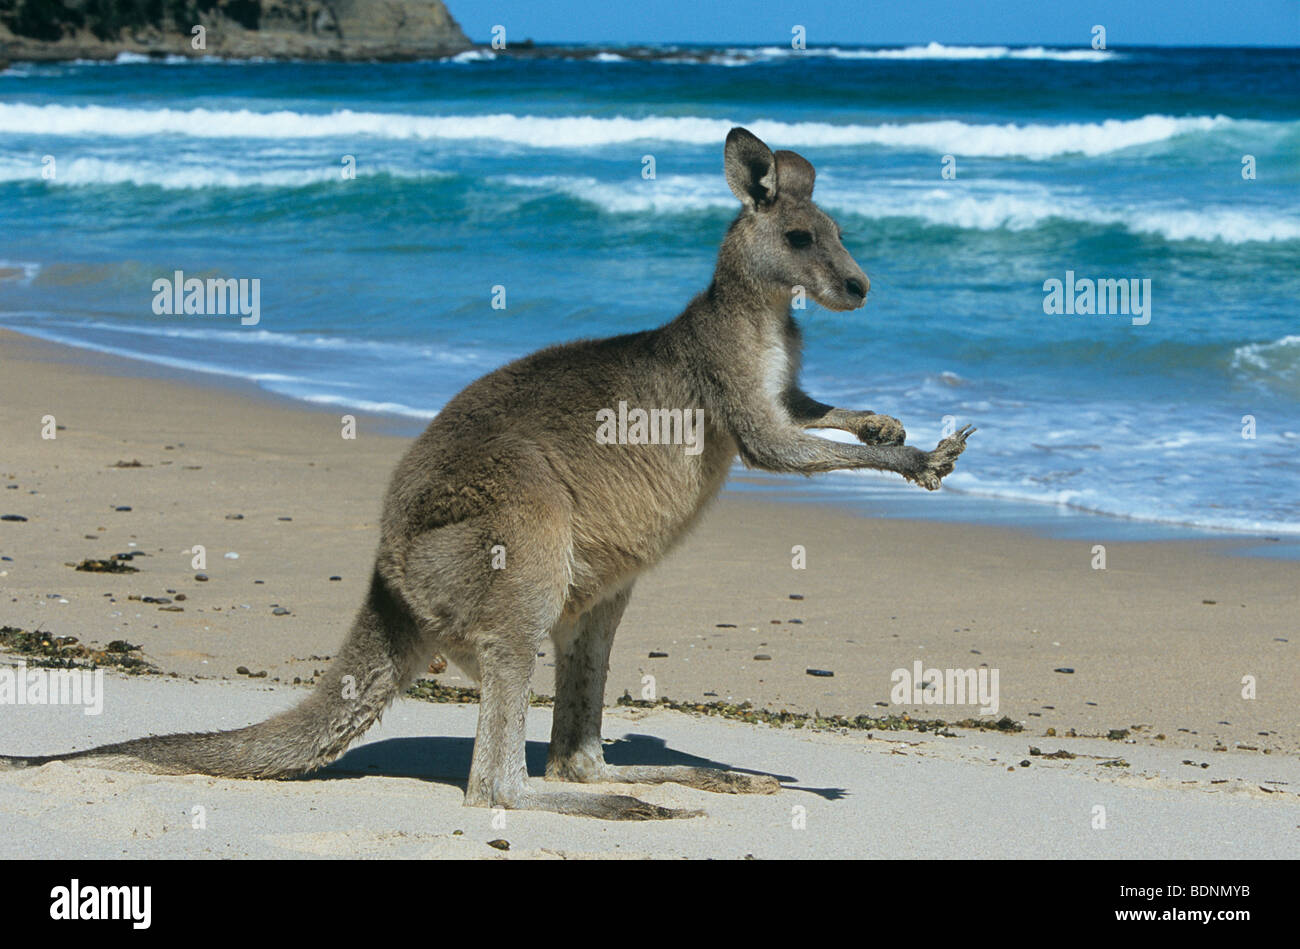 Kangaroo on beach Stock Photo